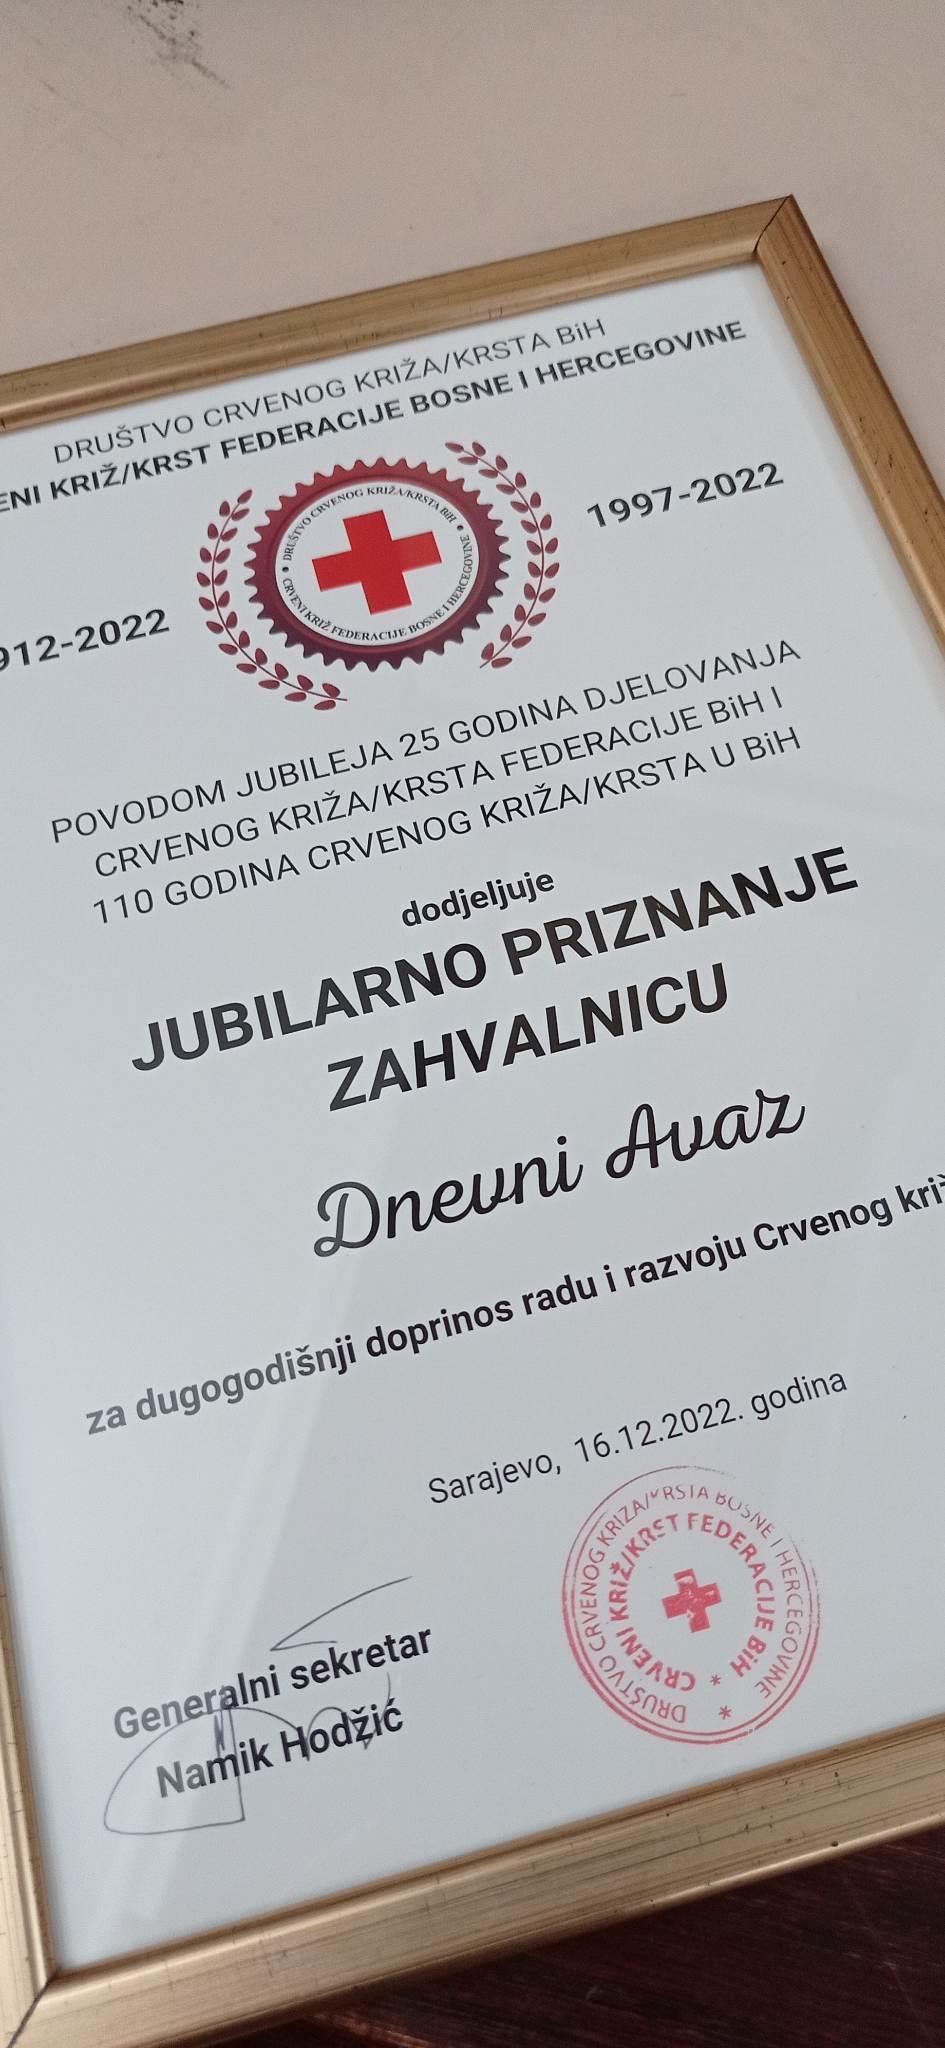 Zahvalnica "Dnevnom avazu" za dugogodišnji rad i doprinos na izgradnji organizacije Crvenog križa - Avaz